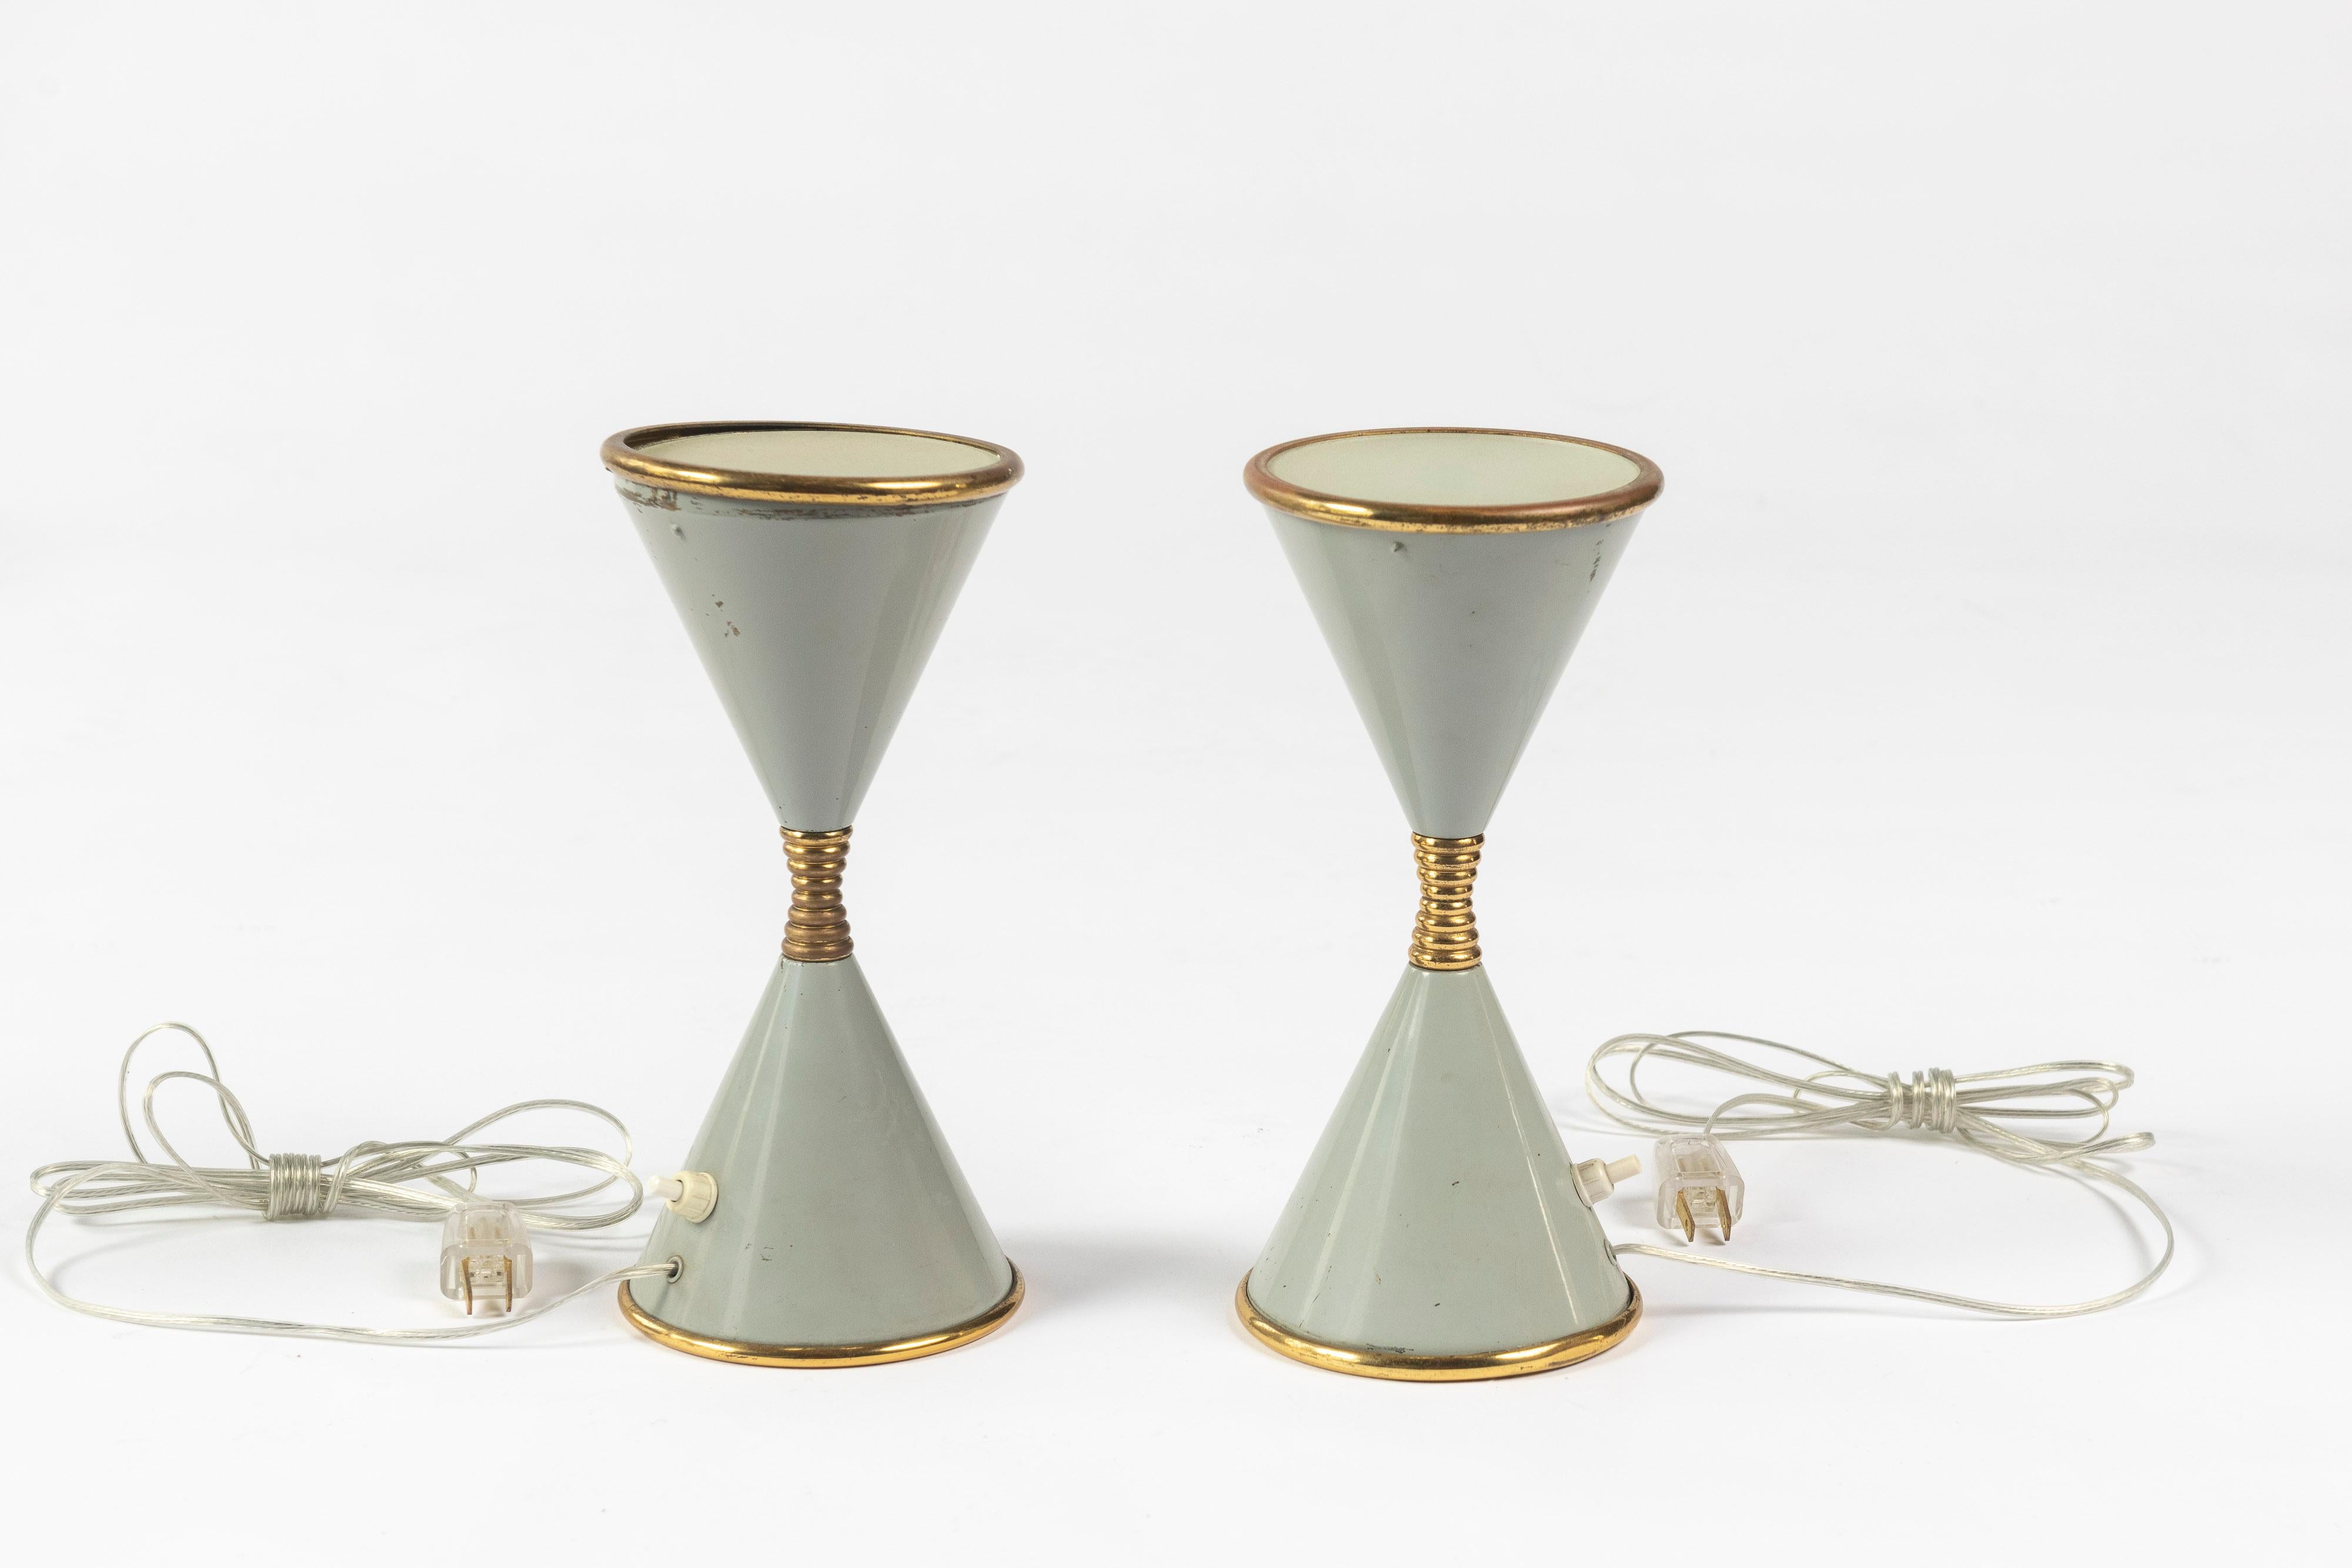 Paire de lampes sablier rares, conçues par Angelo Lelii pour Arredoluce, réalisées au début des années 1960. Les lampes sont vendues par paire et sont en laiton laqué dans un gris menthe du milieu du siècle,  avec du verre dépoli sur le dessus de